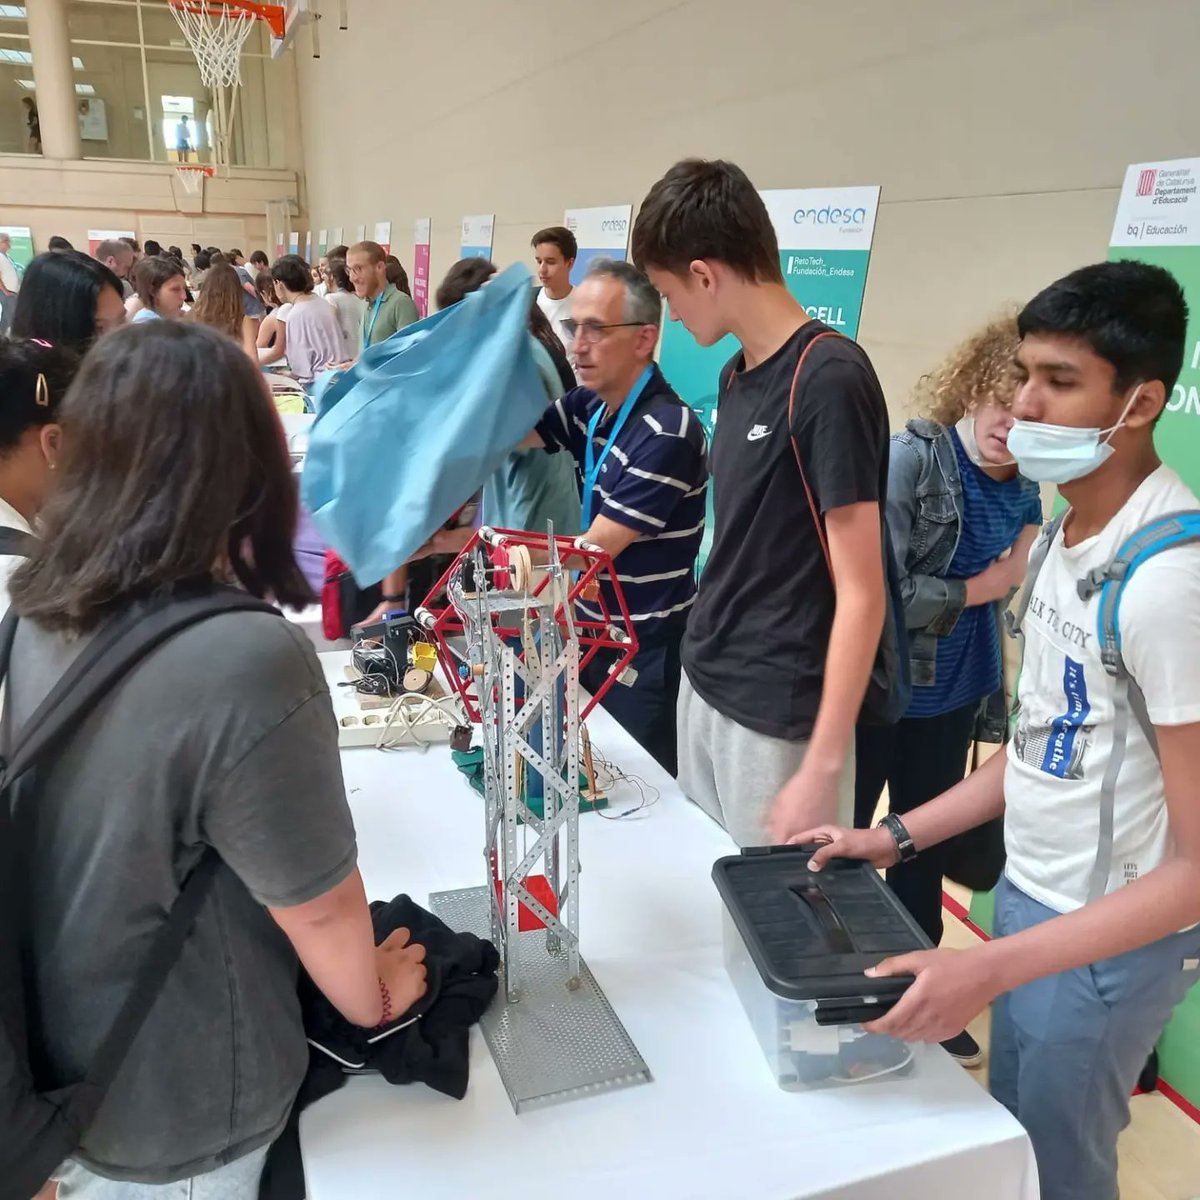 Alumnes de l'optativa robòtica de 2n d'ESO del @insponsdicart han assistit a la trobada final del @RetoTech on han exposat els projectes fets a classe. La fira ha sigut un èxit i esperem tornar l'any vinent @fundacionendesa #Robotics #steamcat #espirituretotech